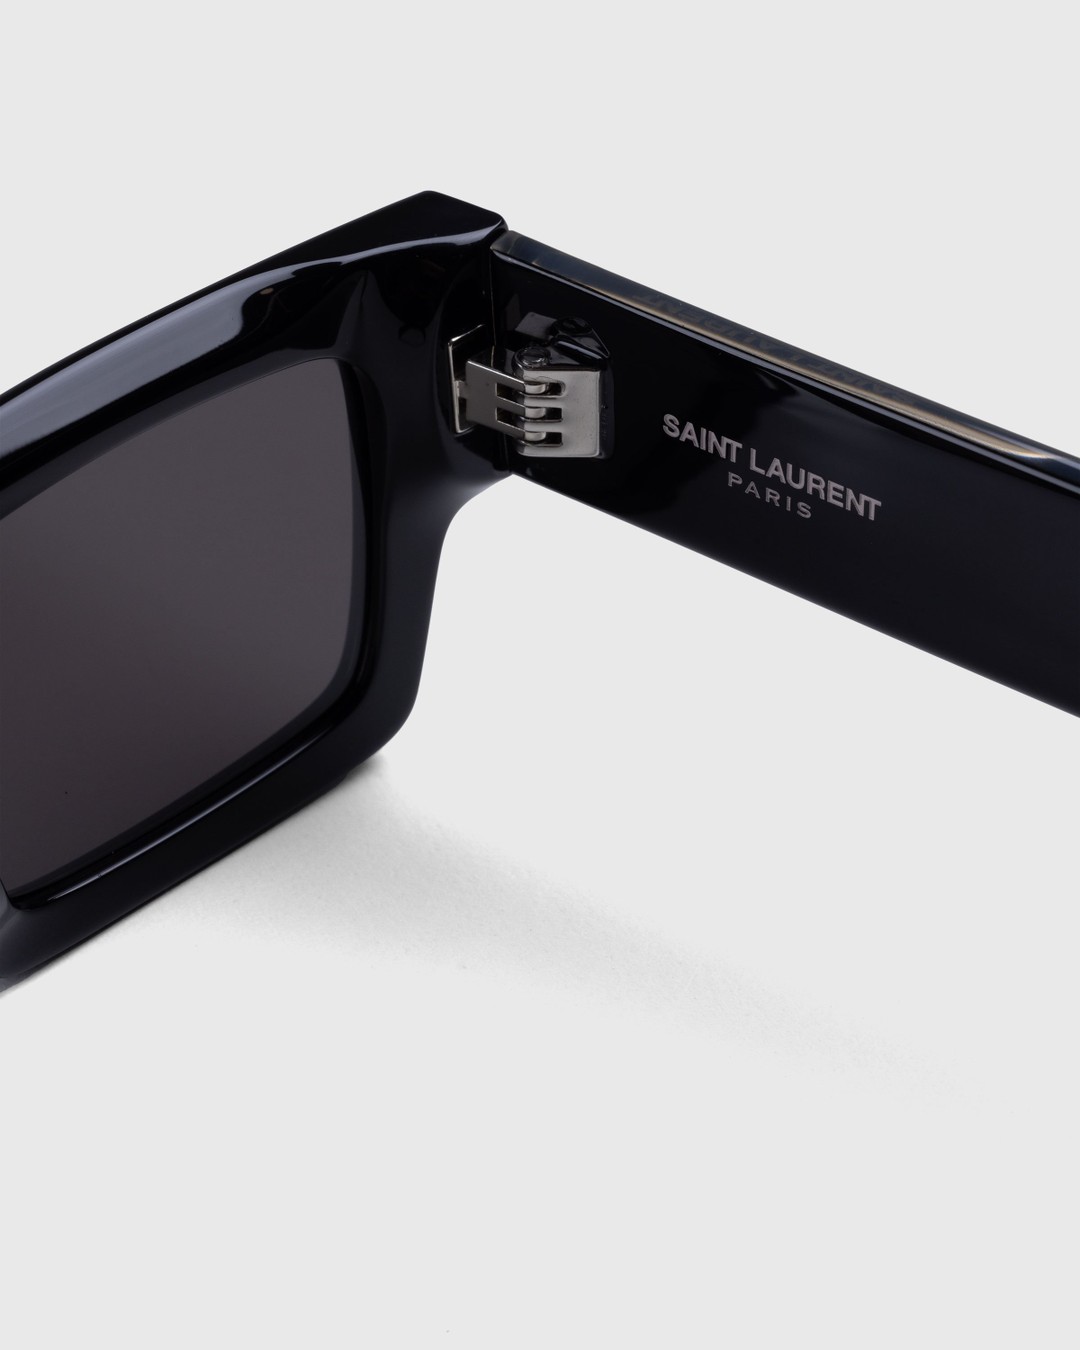 Saint Laurent – SL 572 Square Frame Sunglasses Black/Crystal - Sunglasses - Multi - Image 3